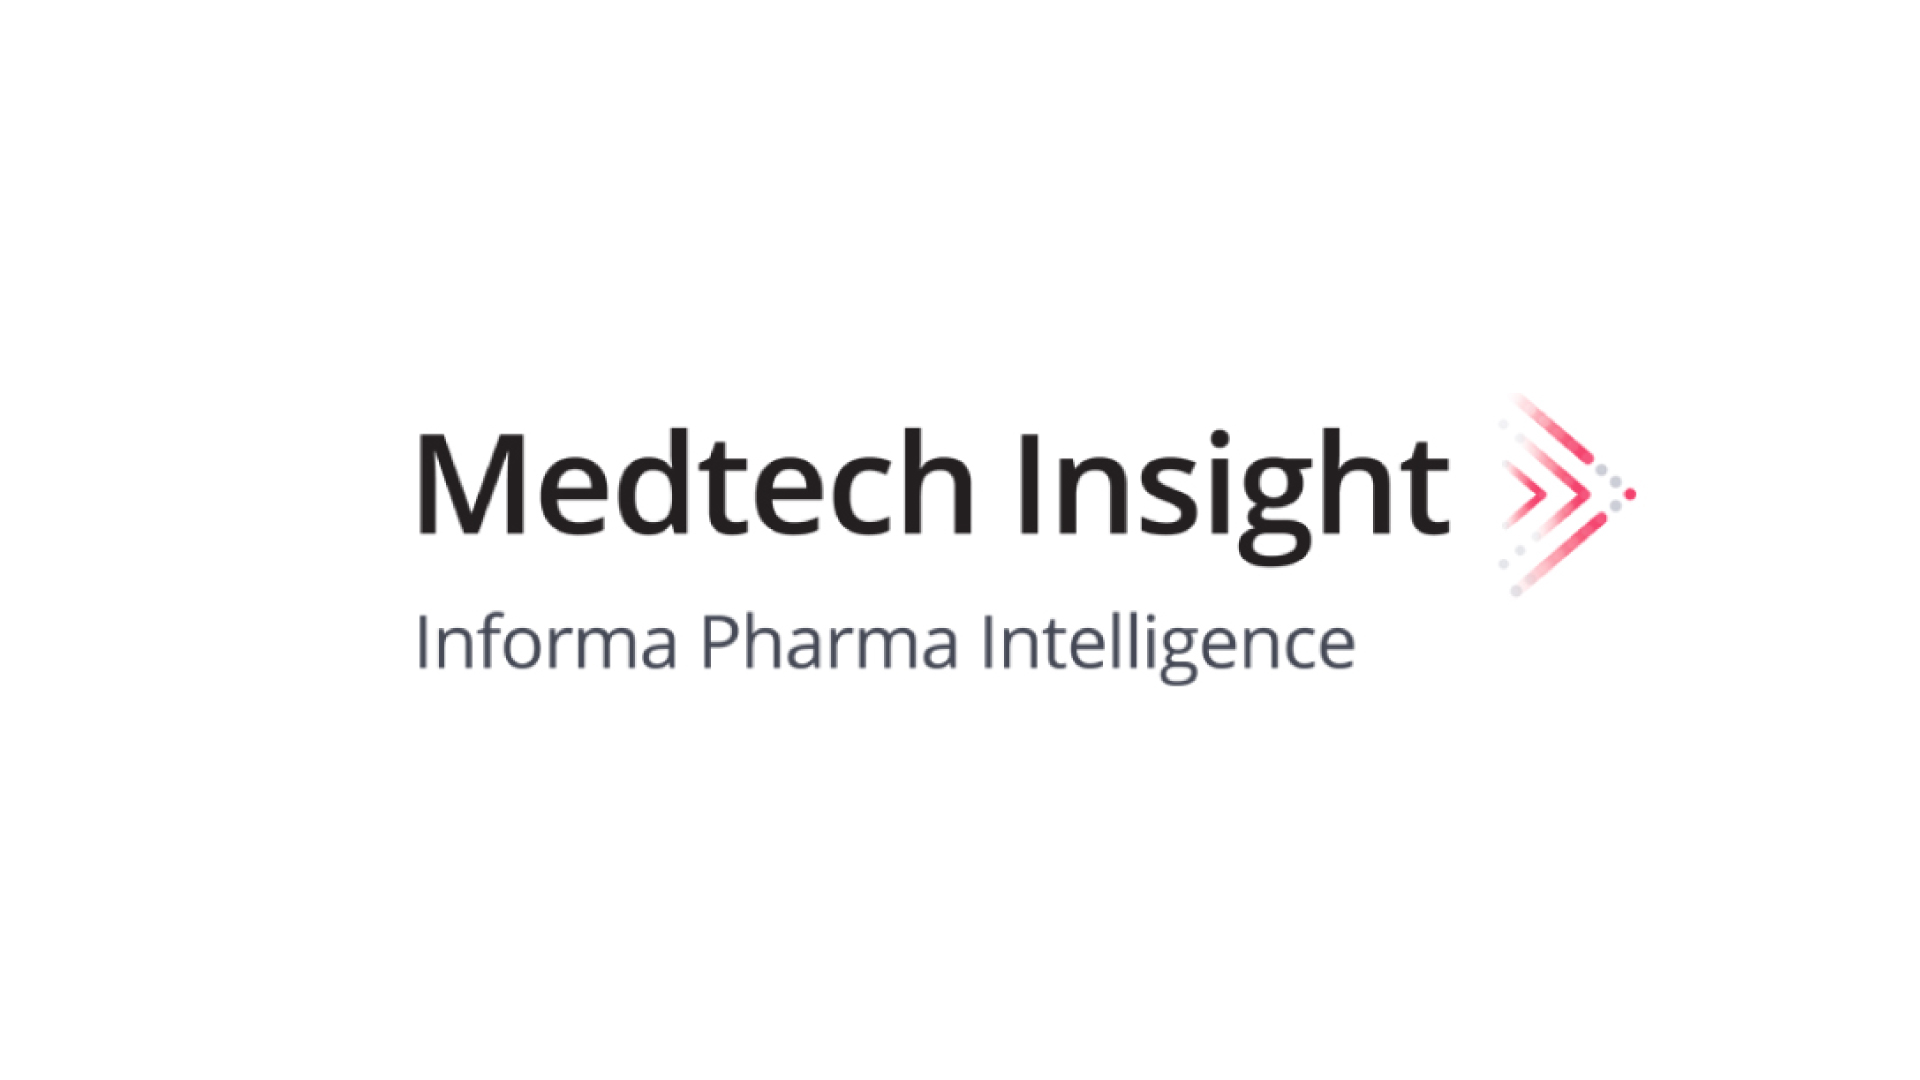 MedTech Insight